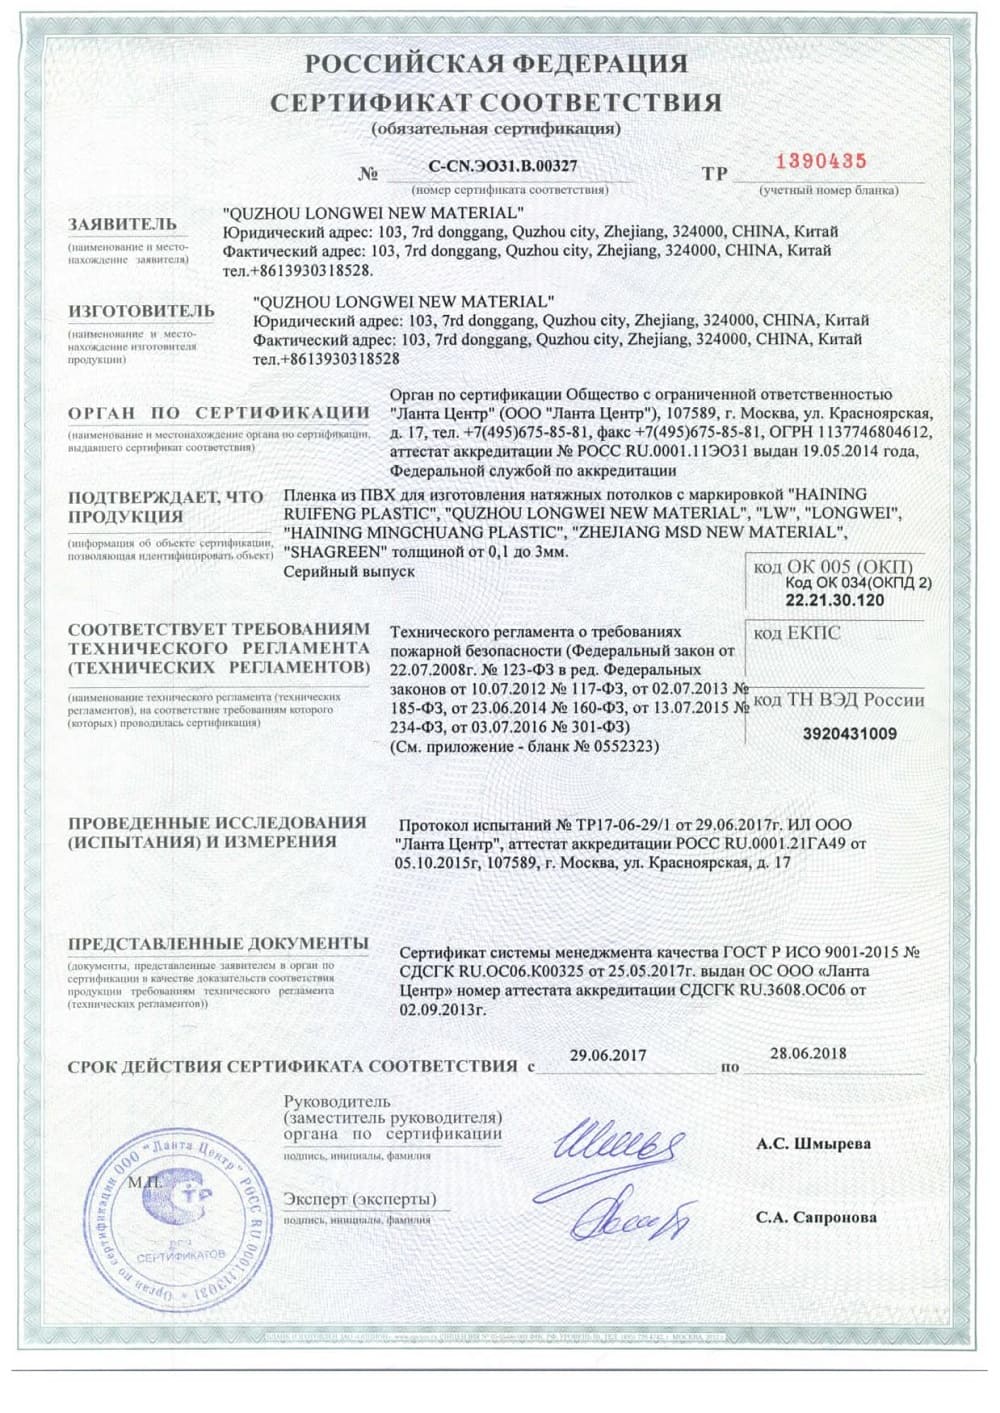 Сертификат соответствия на натяжные полотна Alezi для двухуровневых потолков